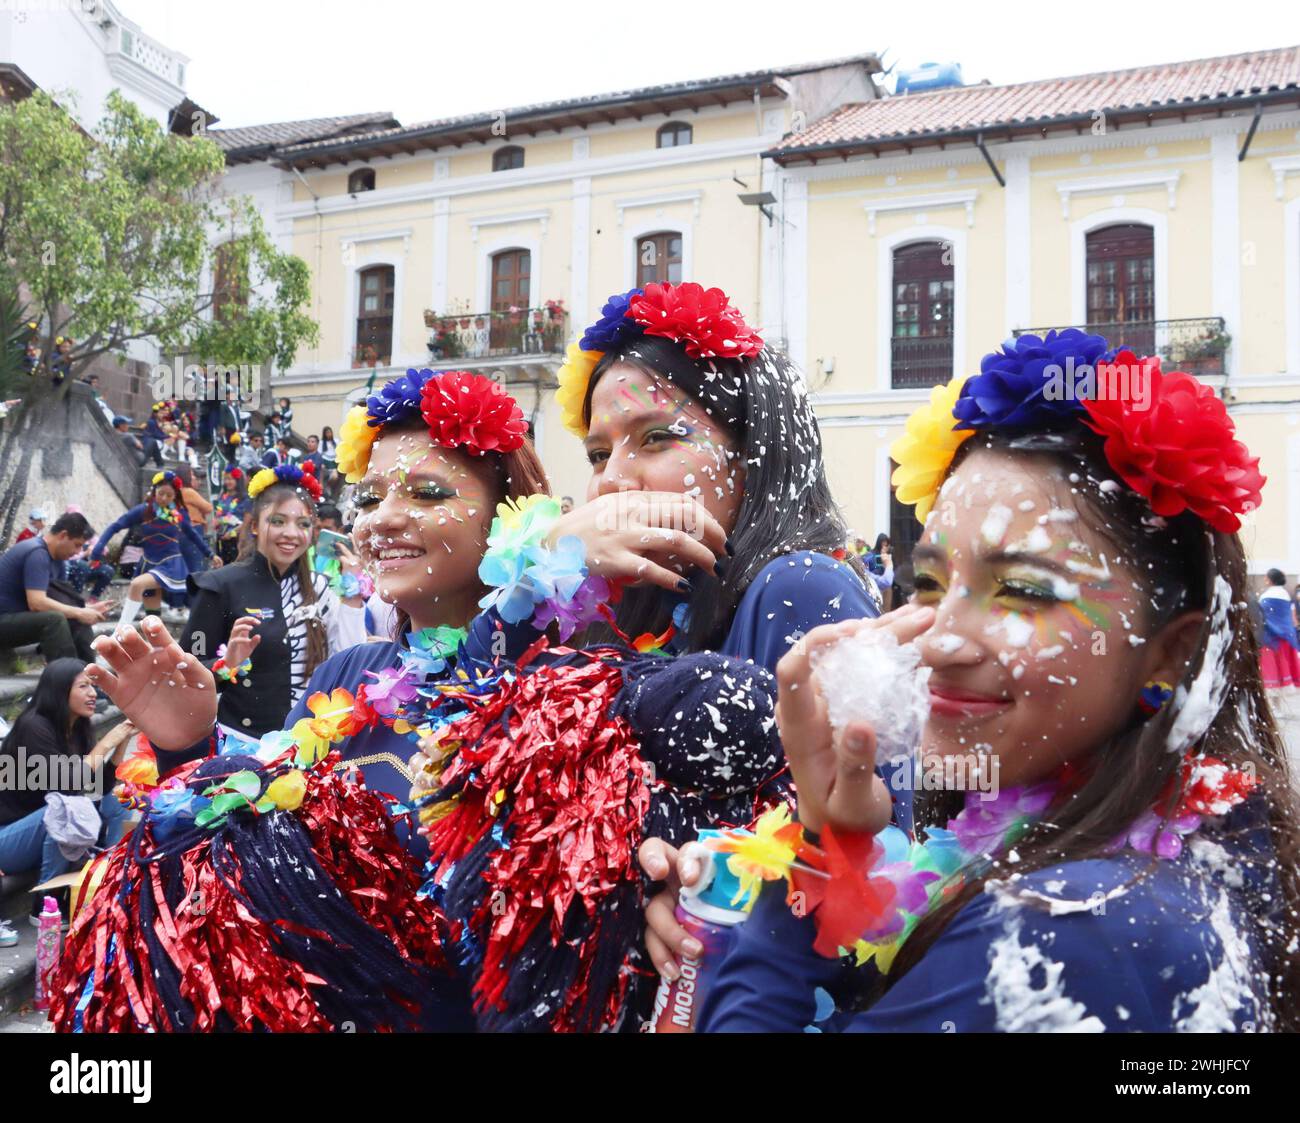 UIO-CARNAVAL-PLAZA-SAN-BLAS Quito, sabado 10 de febrero del 2024 Con Bandas de Paz, bailes tradicionales, canon de espuma, ninos, jovenes y adultos, festejan el feriado de carnaval, en la Plaza de San Blas, Centro Historico. Fotos:Rolando Enriquez/API Quito Pichincha Ecuador ACE-UIO-CARNAVAL-PLAZA-SAN-BLAS-38213f912e4f5c338db55d3d46d16fbe *** UIO CARNAVAL PLAZA SAN BLAS Quito, Saturday February 10, 2024 With bands of peace, traditional dances, foam canon, children, youth and adults, celebrate the carnival holiday in the Plaza de San Blas, Centro Historico Photos Rolando Enriquez API Quito Pich Stock Photo